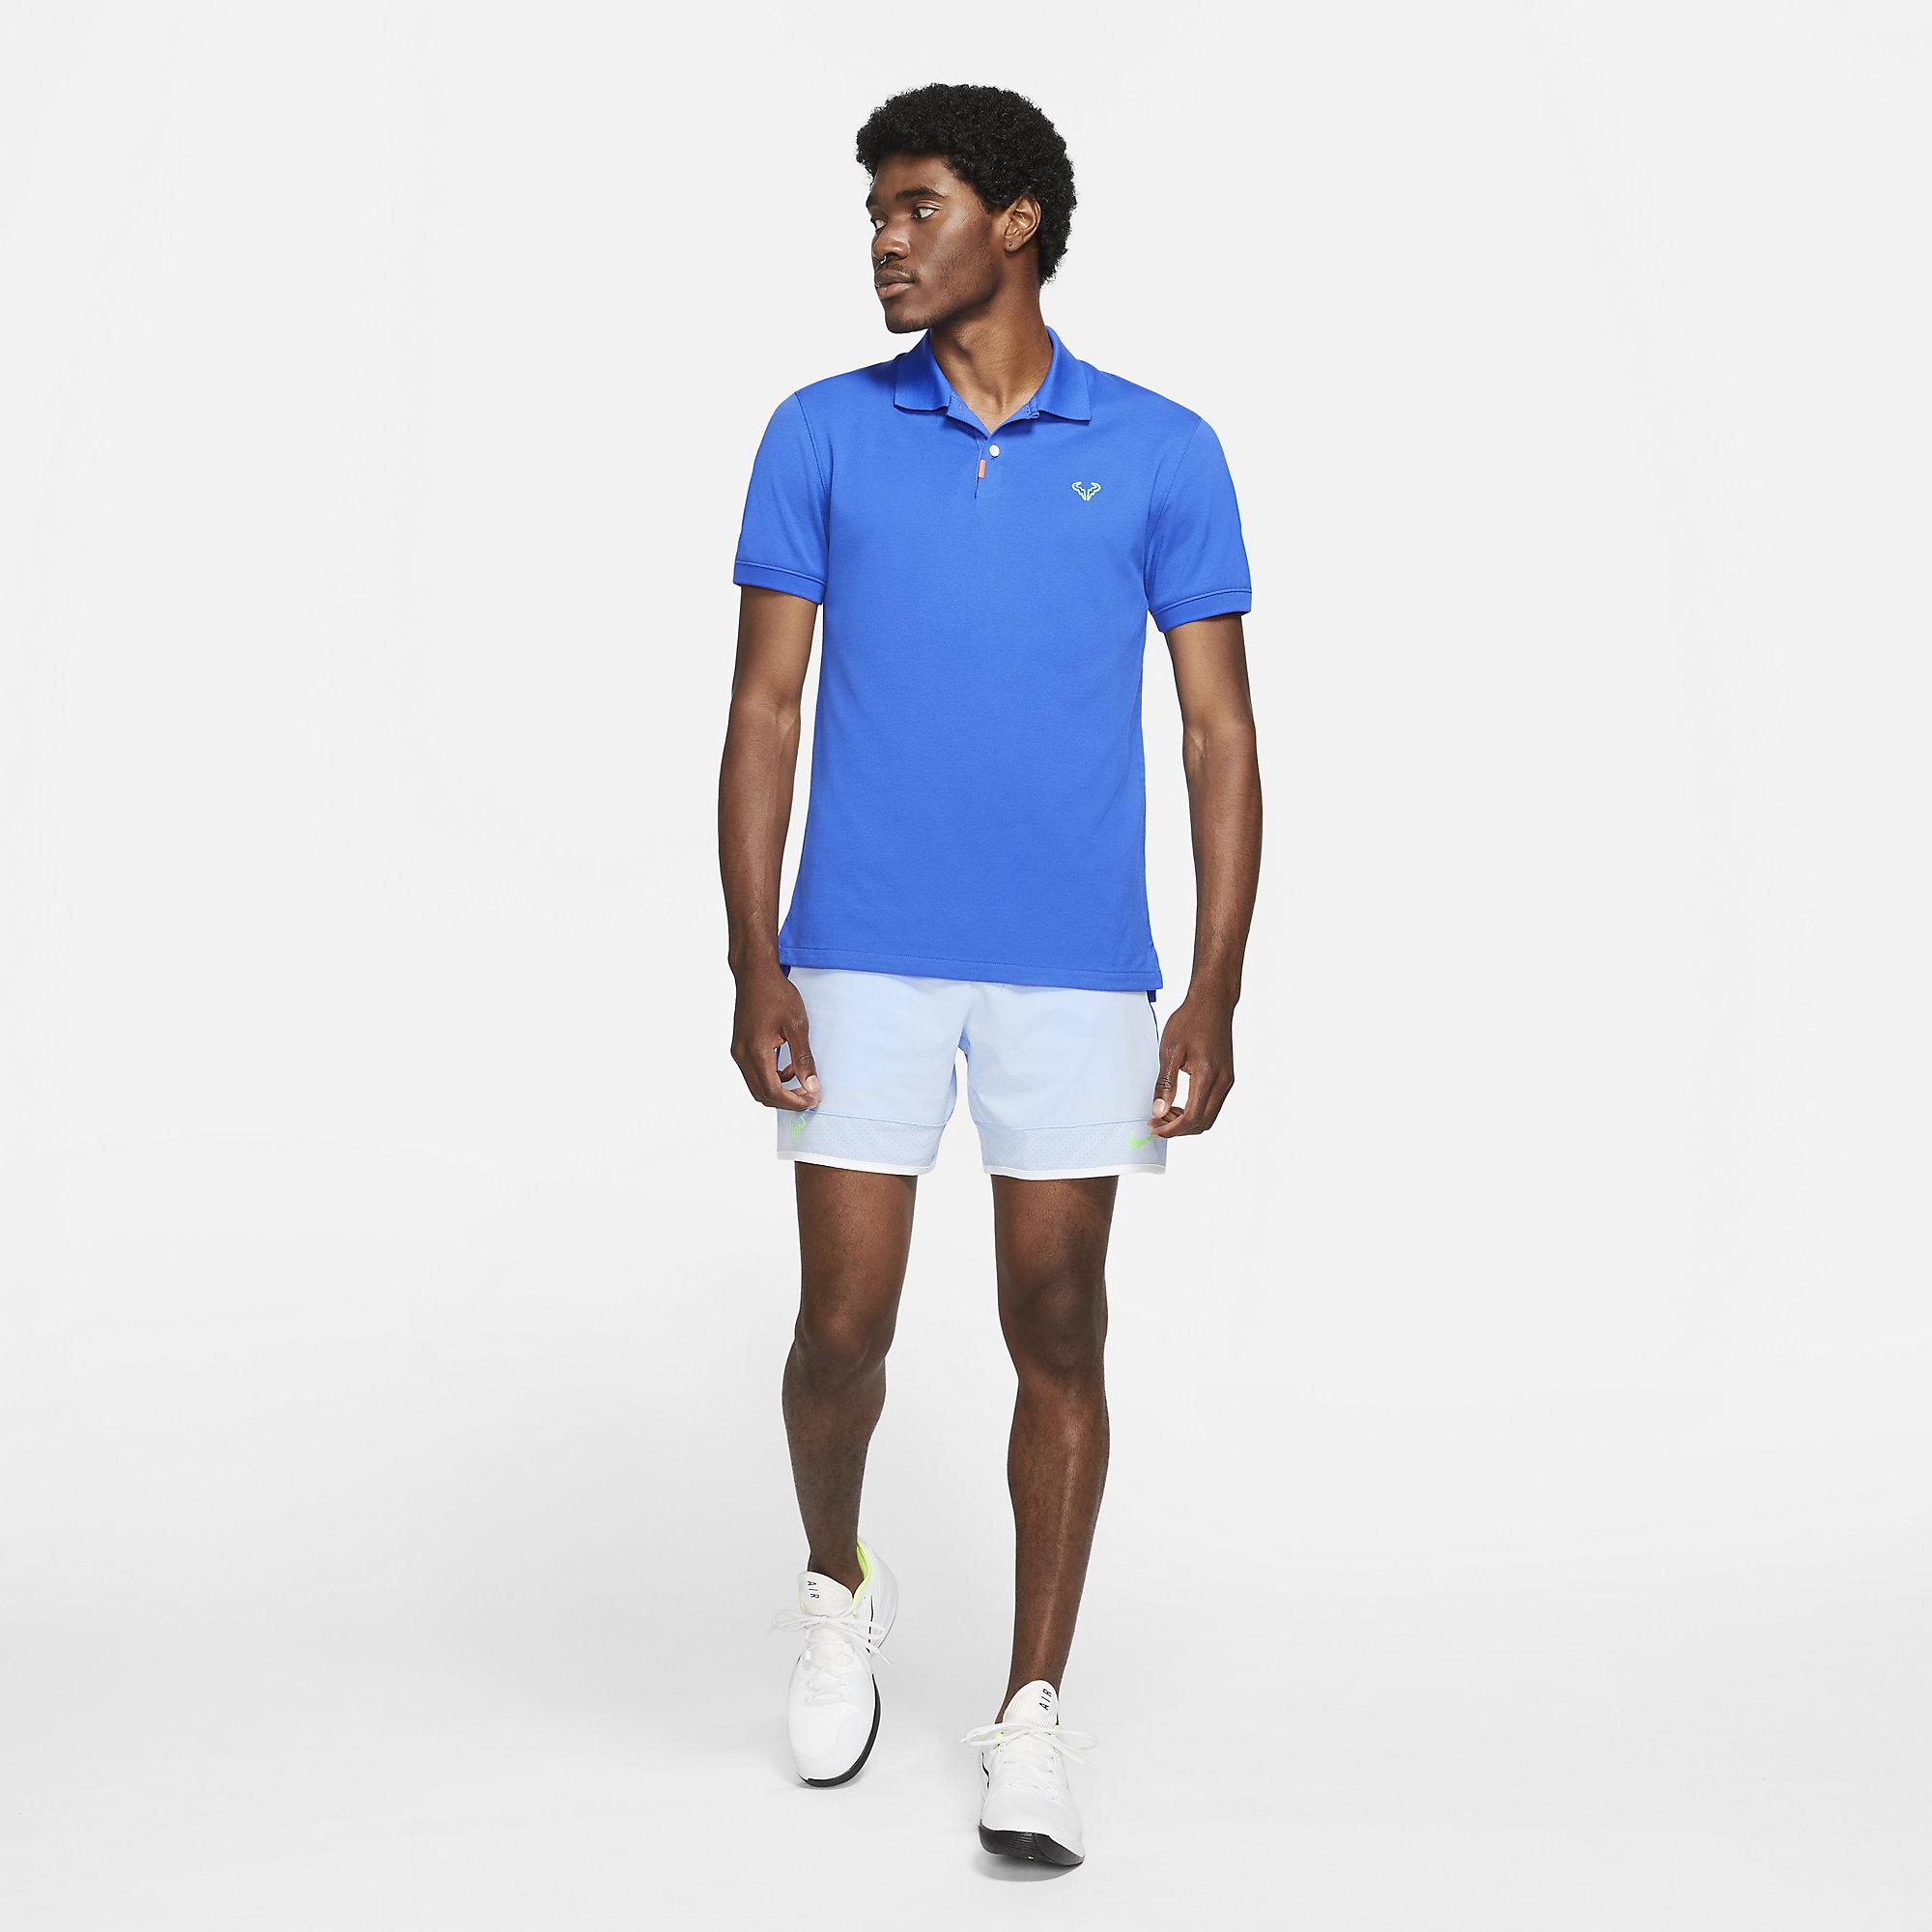 Nike Mens Slim-Fit Rafa Polo - Hyper Royal - Tennisnuts.com